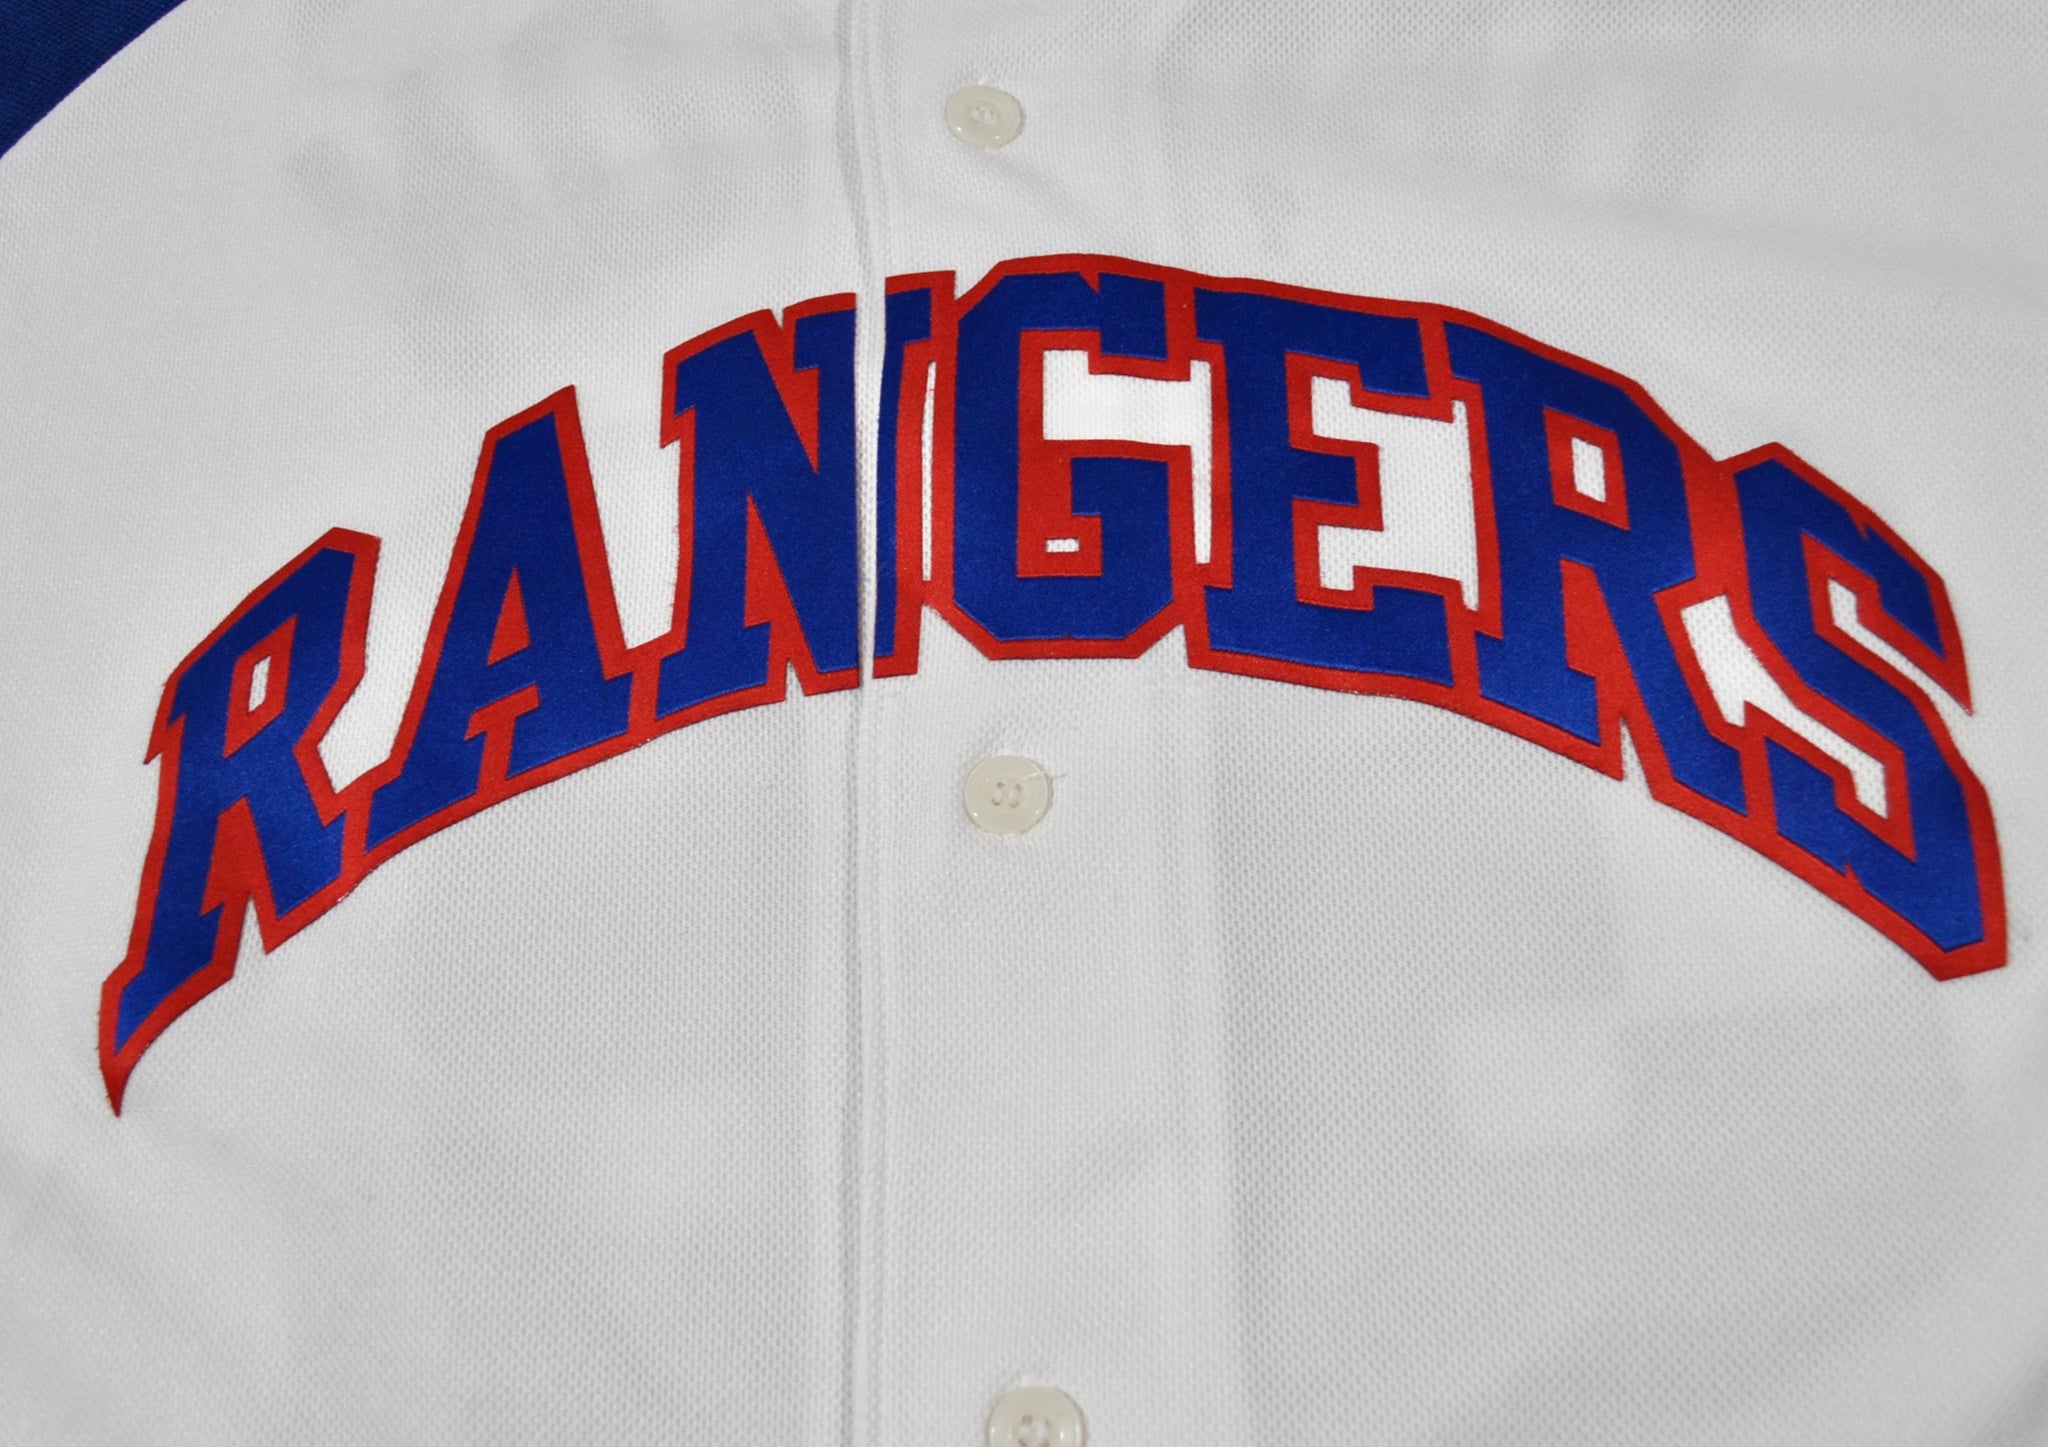 MLB Texas Rangers Jersey 'hamilton' (Signed)